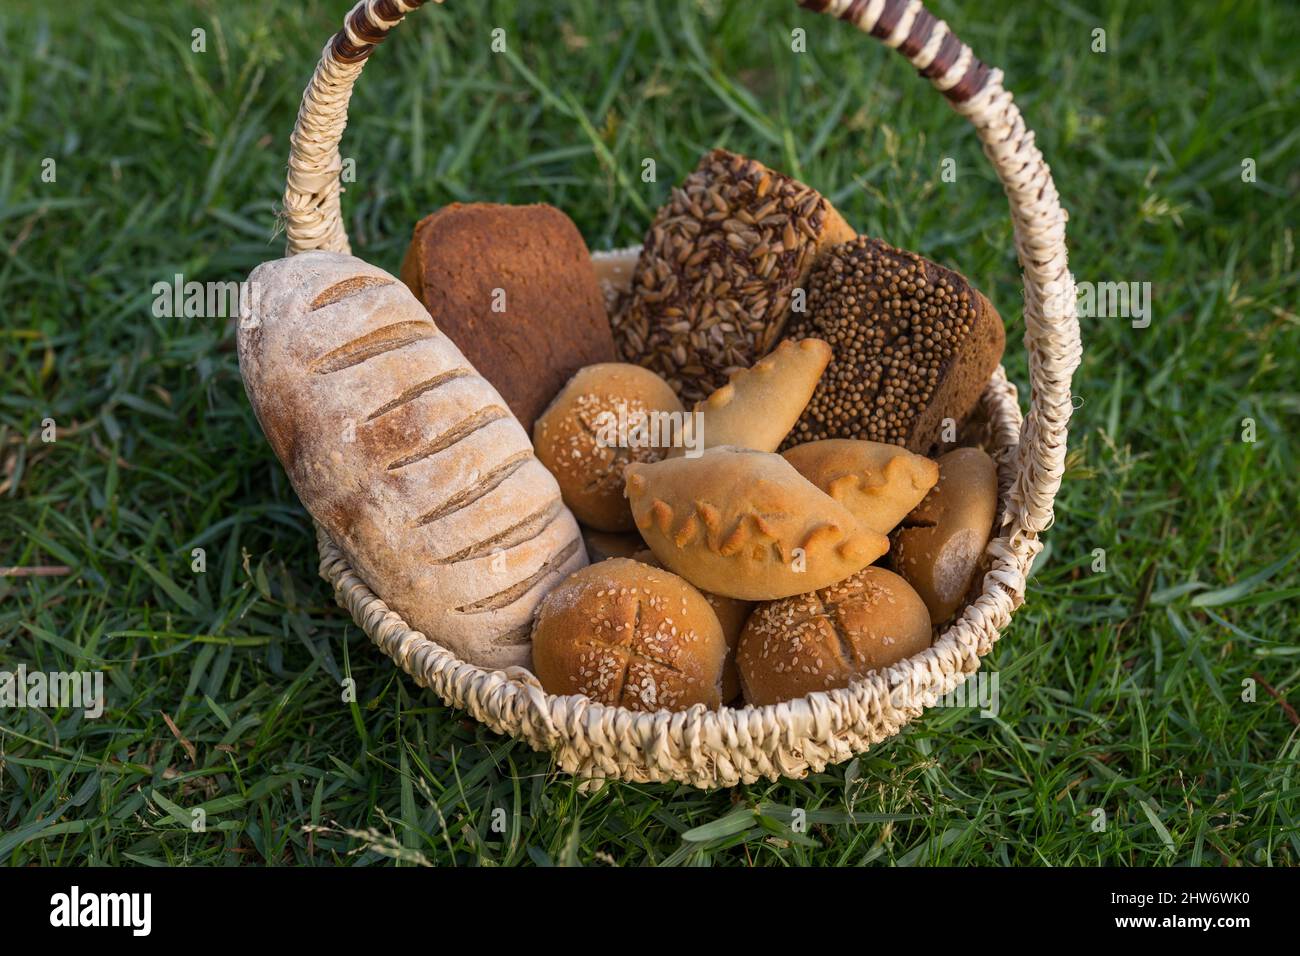 Assorti di gustoso pane fresco e bianco fatto in casa con i semi in cesto di vimini in piedi sul verde erba. Foto di alta qualità Foto Stock